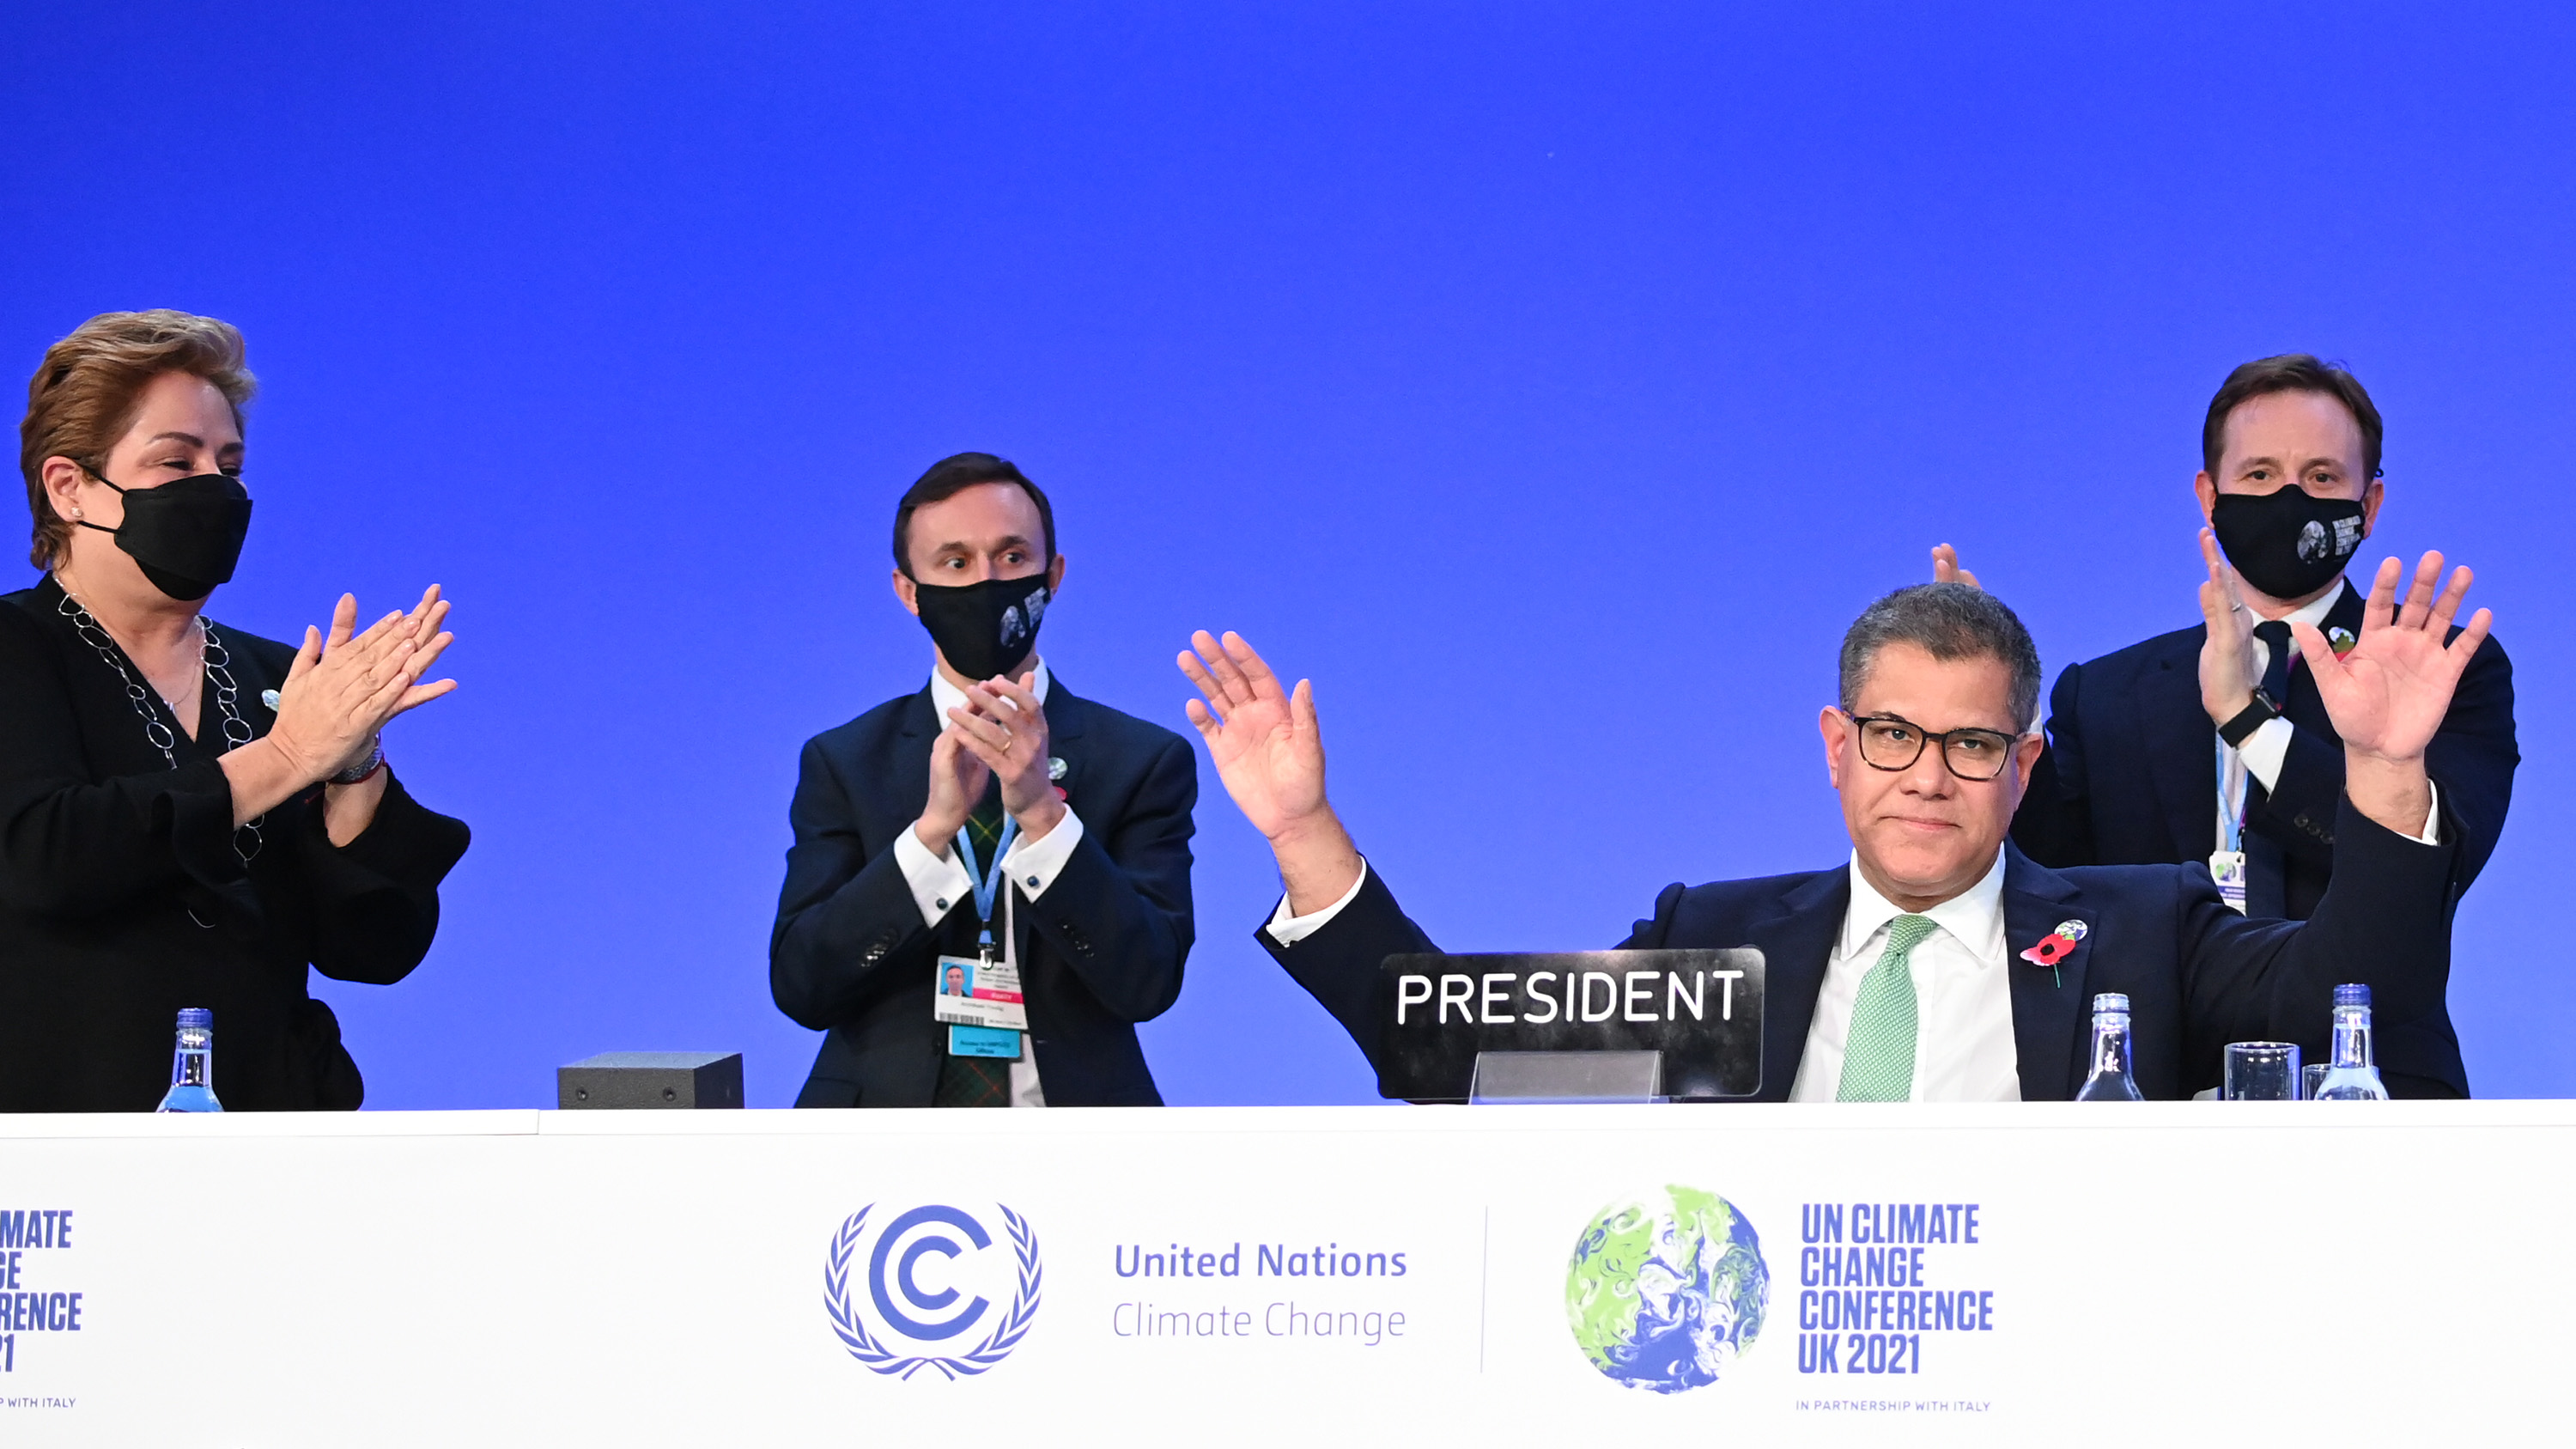 COP26-præsident Alok Sharma modtager klapsalver efter at have holdt en ny closing global tale ved COP26